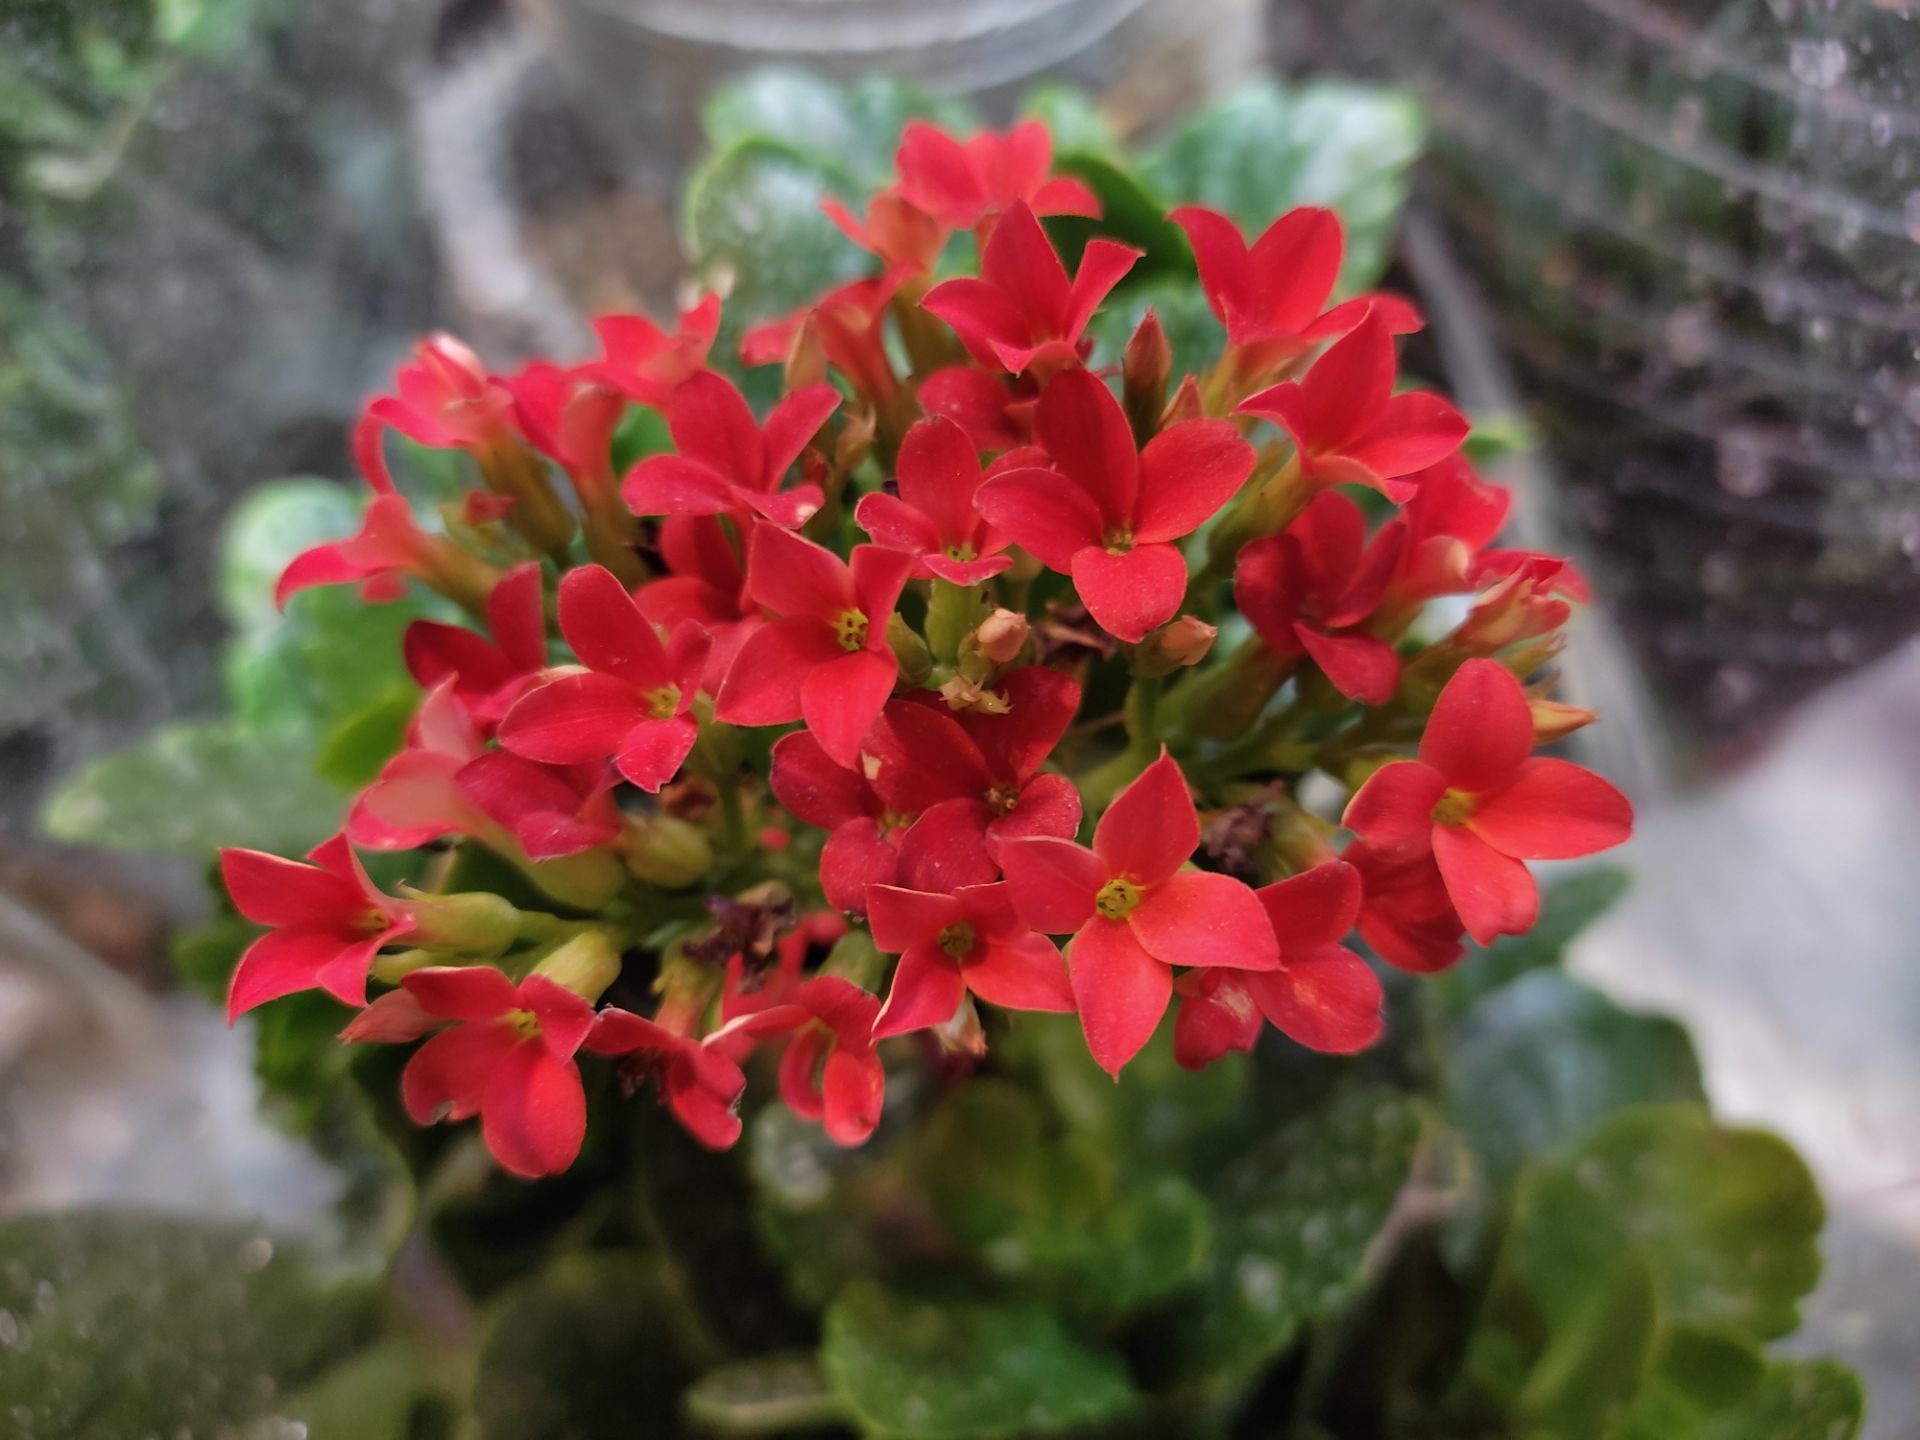 عکس نمونه ۲ برابری دوربین اصلی ردمی نوت ۱۰ در نور کم - گل های قرمز مینیاتوری از نمای نزدیک